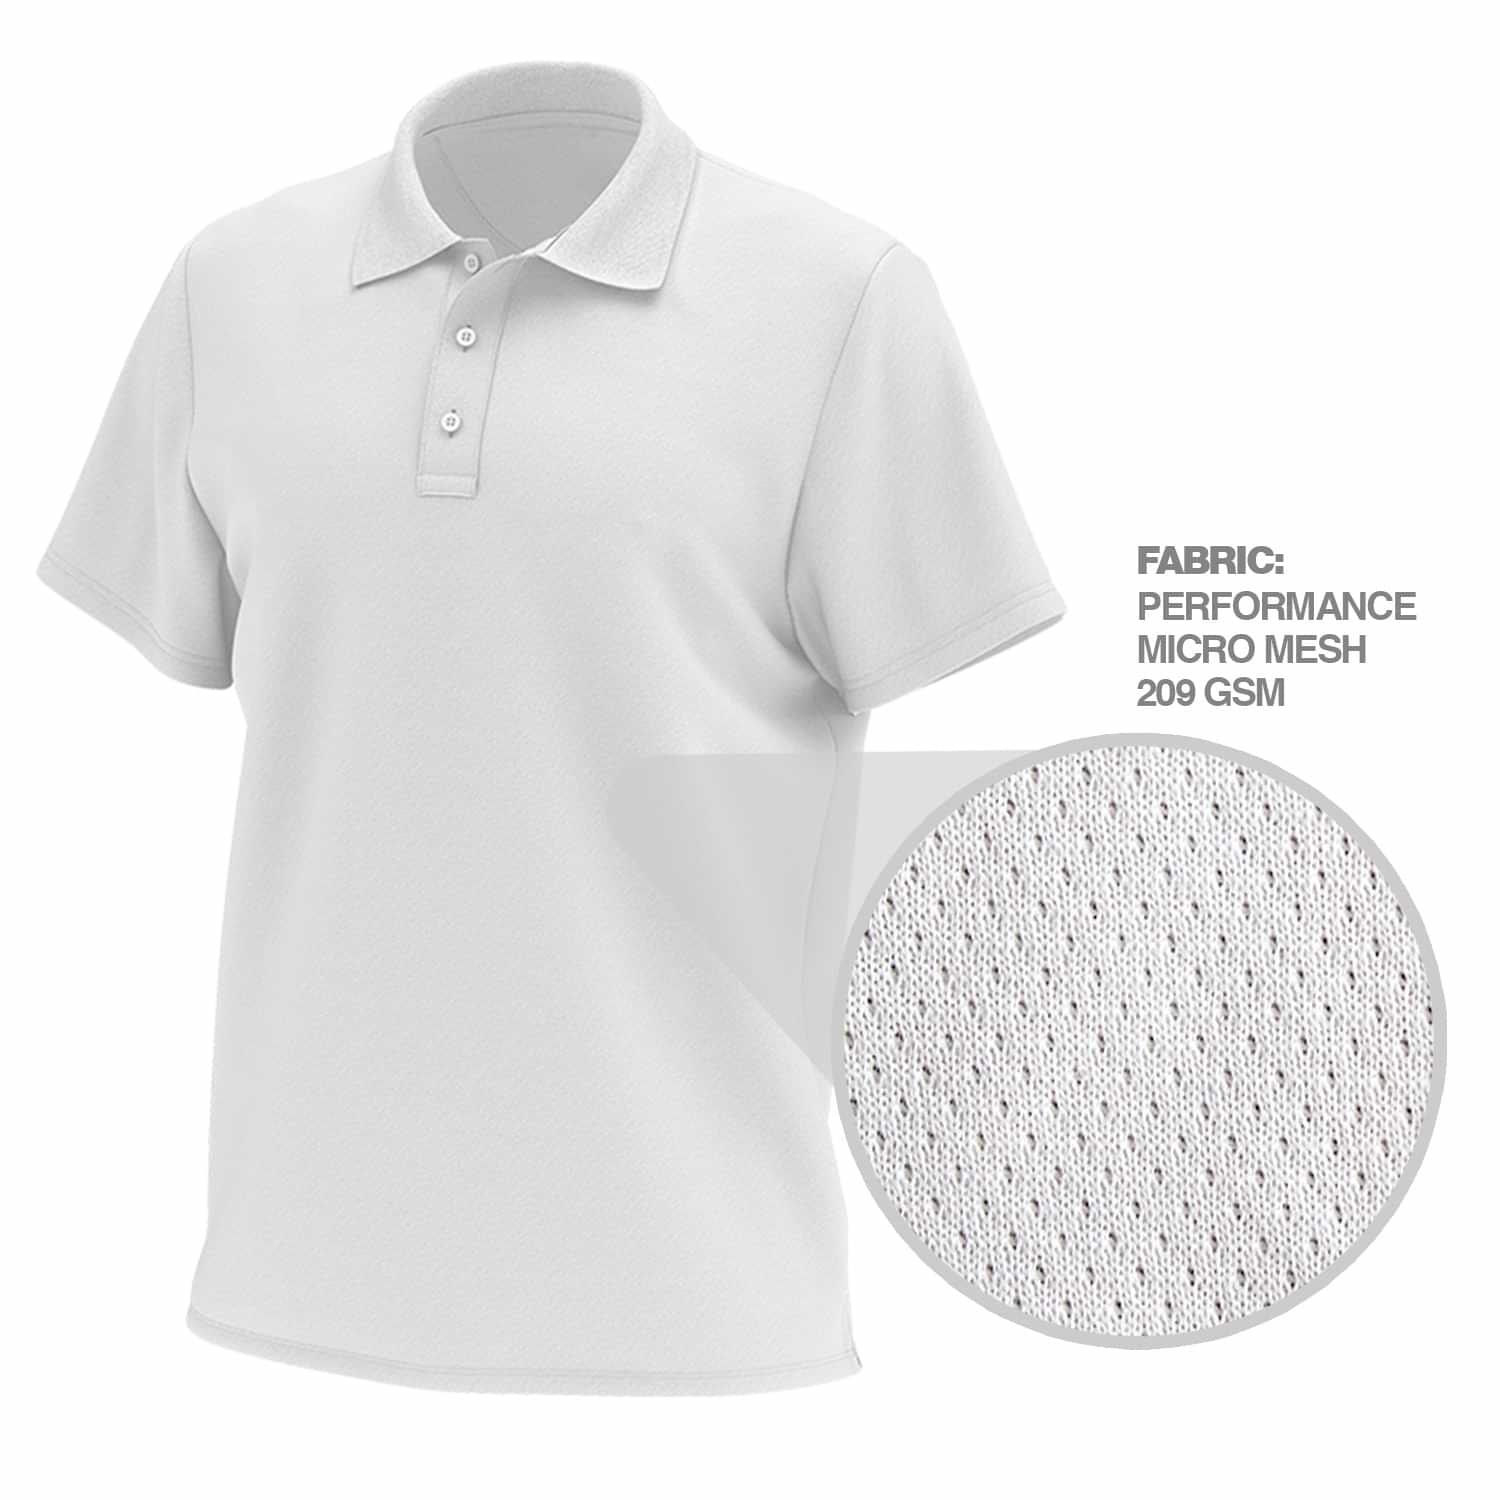 Custom Polo Shirt Designs  Fully Customizable Sublimation Polos